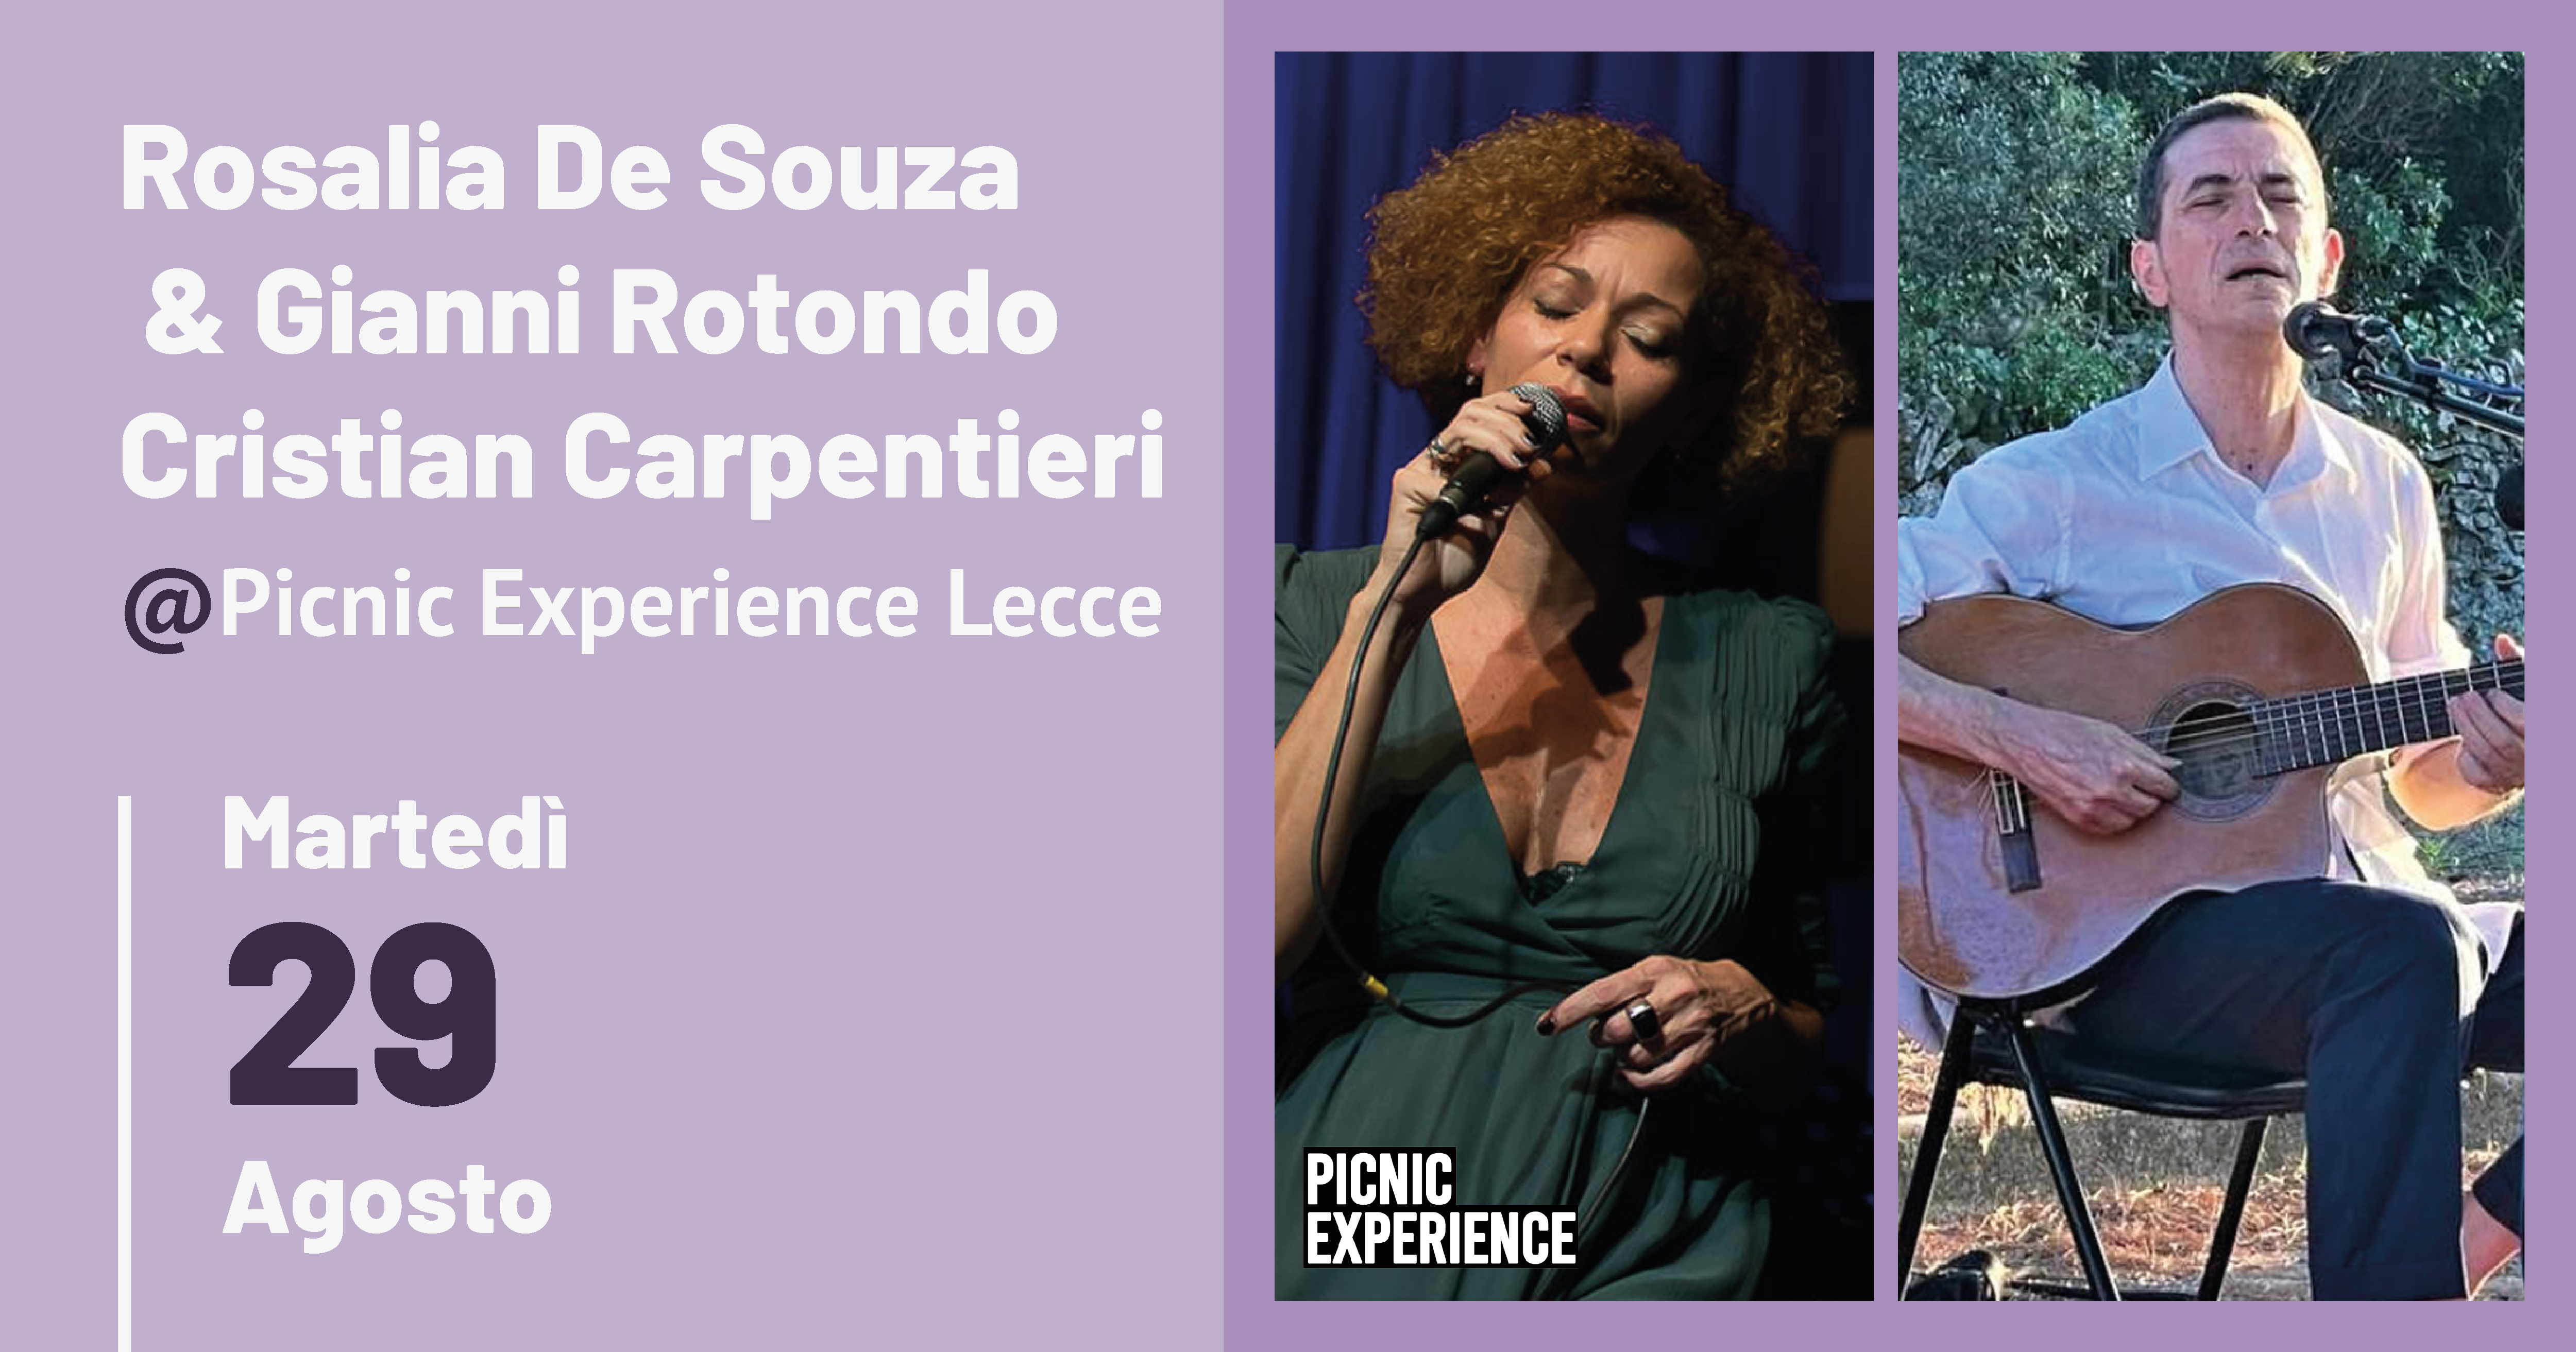 PICNIC EXPERIENCE - Rosalia De Souza / Cristian Carpentieri - フライヤー表